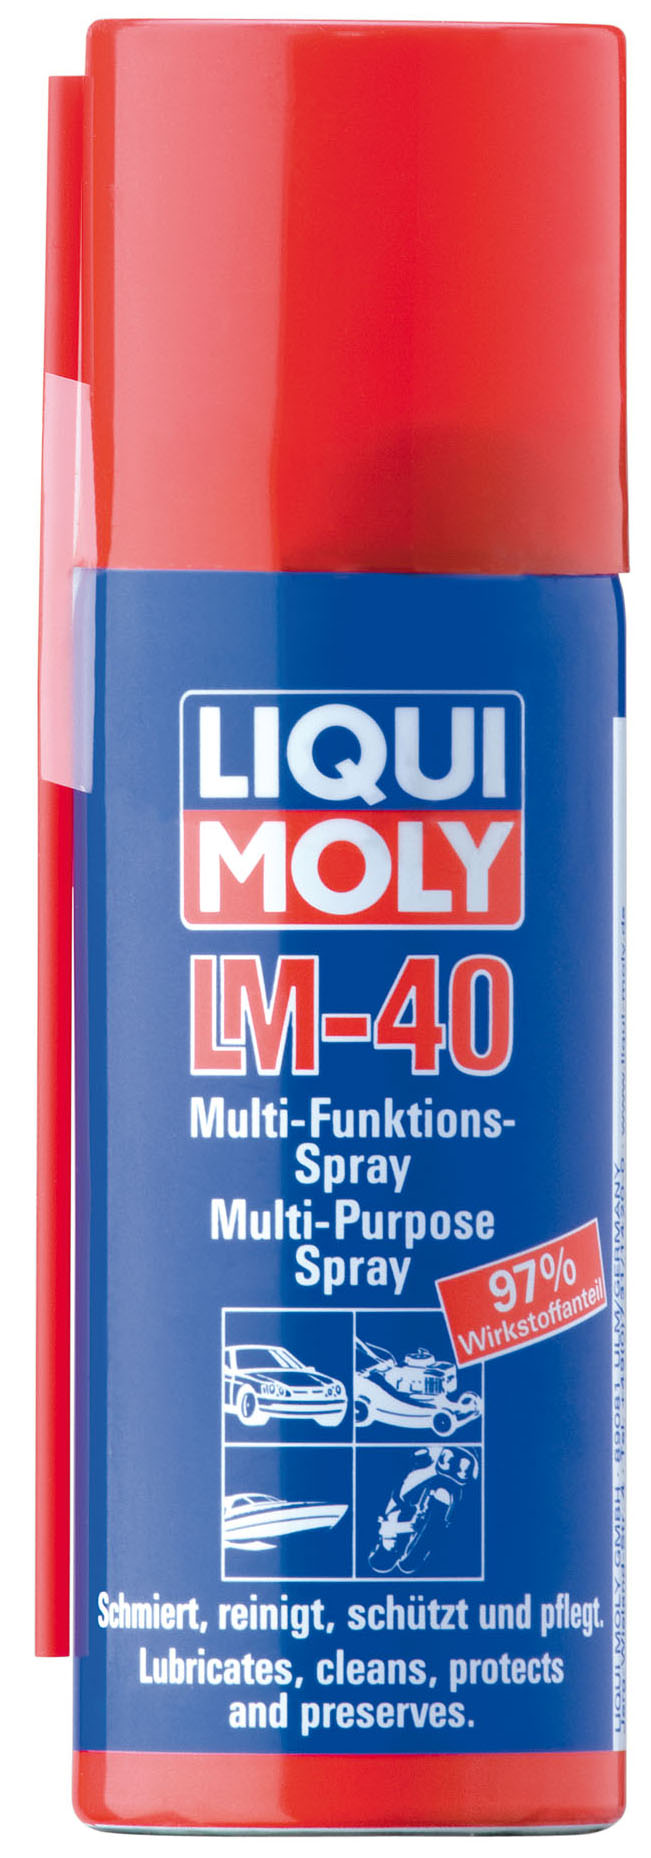 Купить запчасть LIQUI MOLY - 3394 Универсальное средство  LM 40 Multi-Funktions-Spray